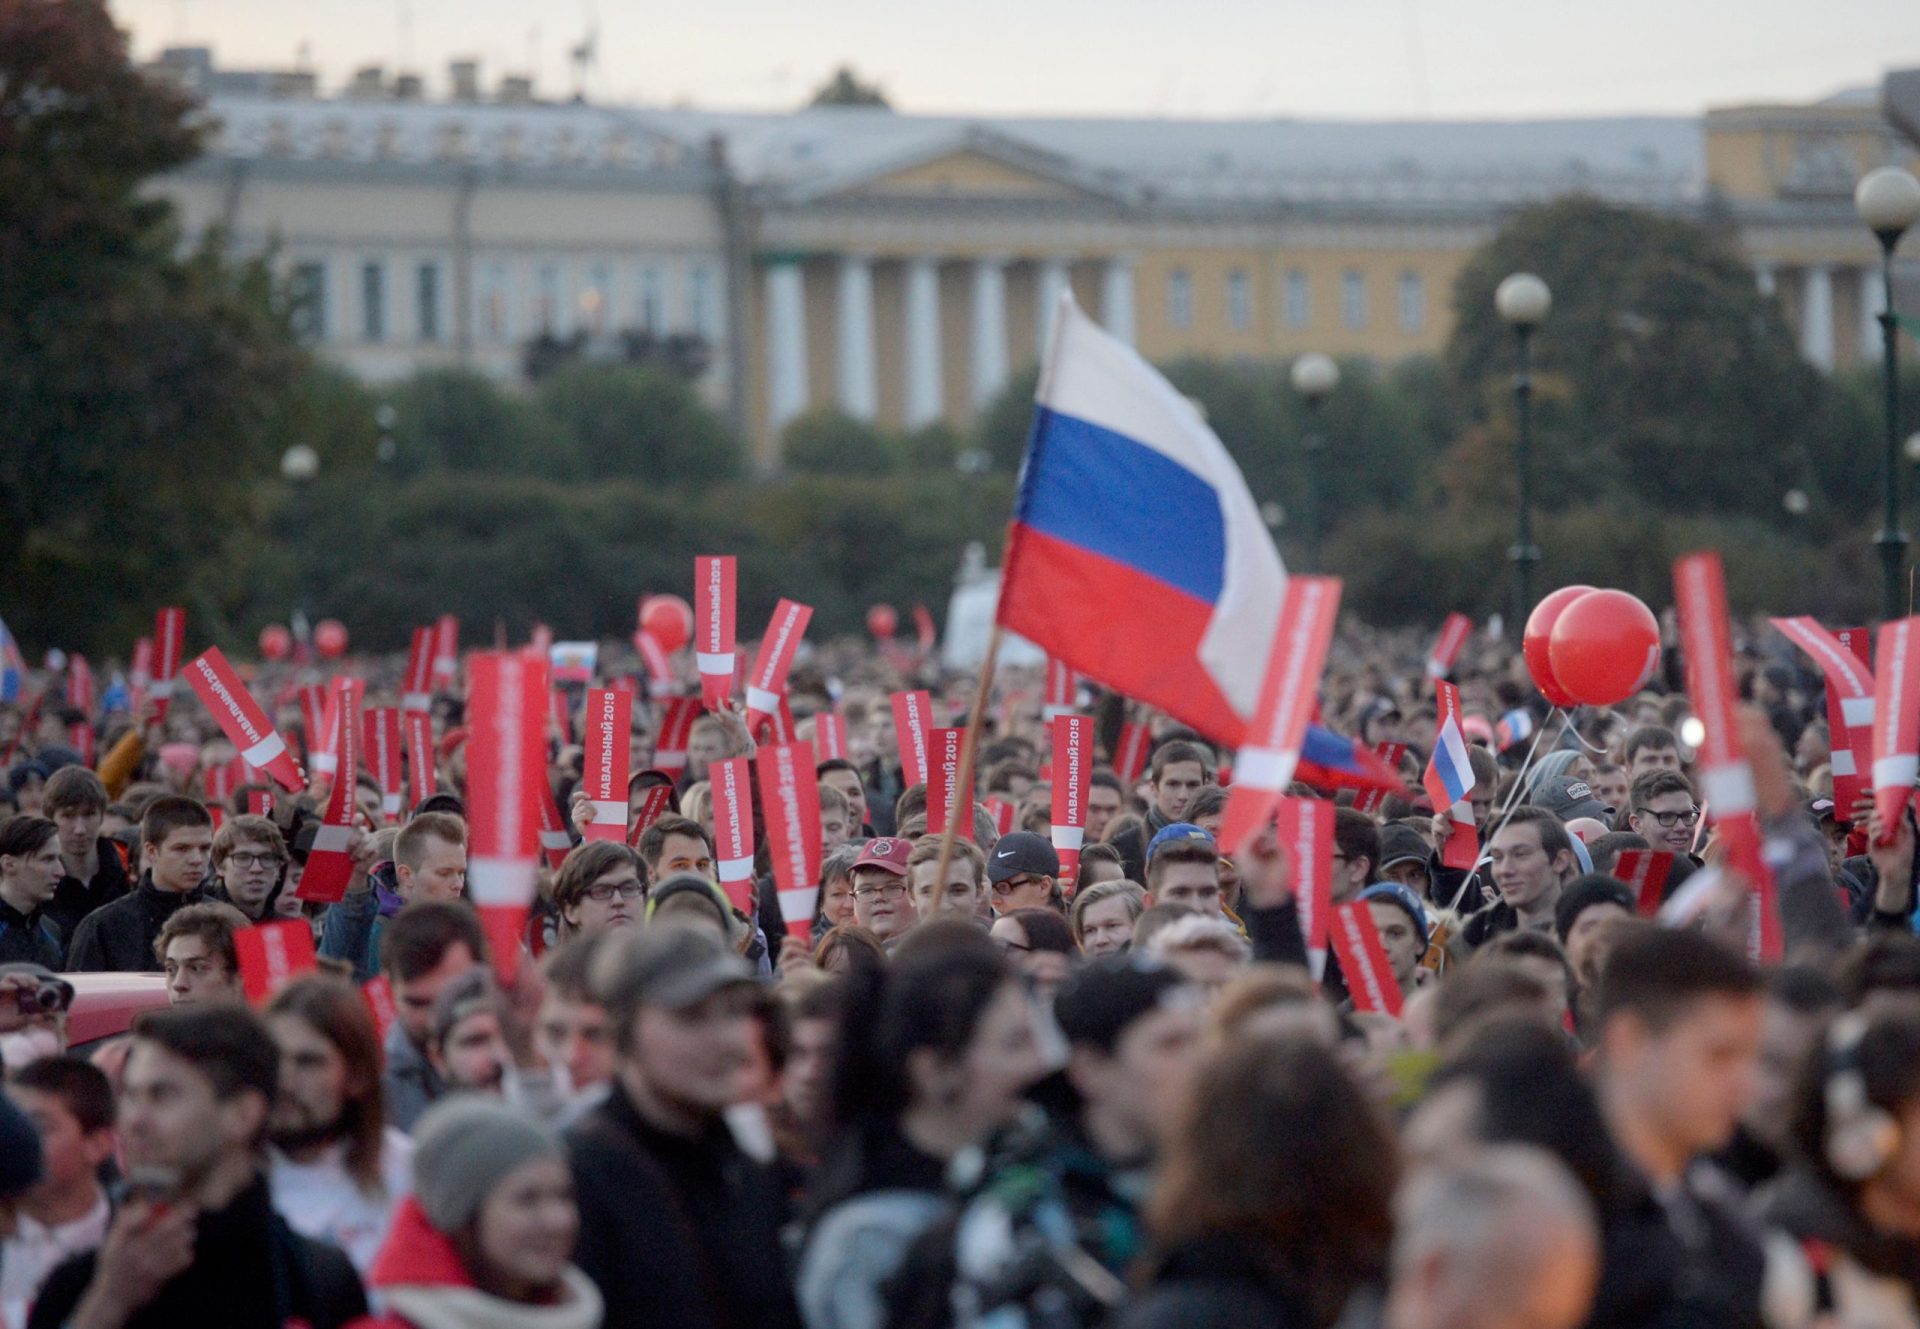 Rússia. Putin presenteado com manifestações em dia de aniversário